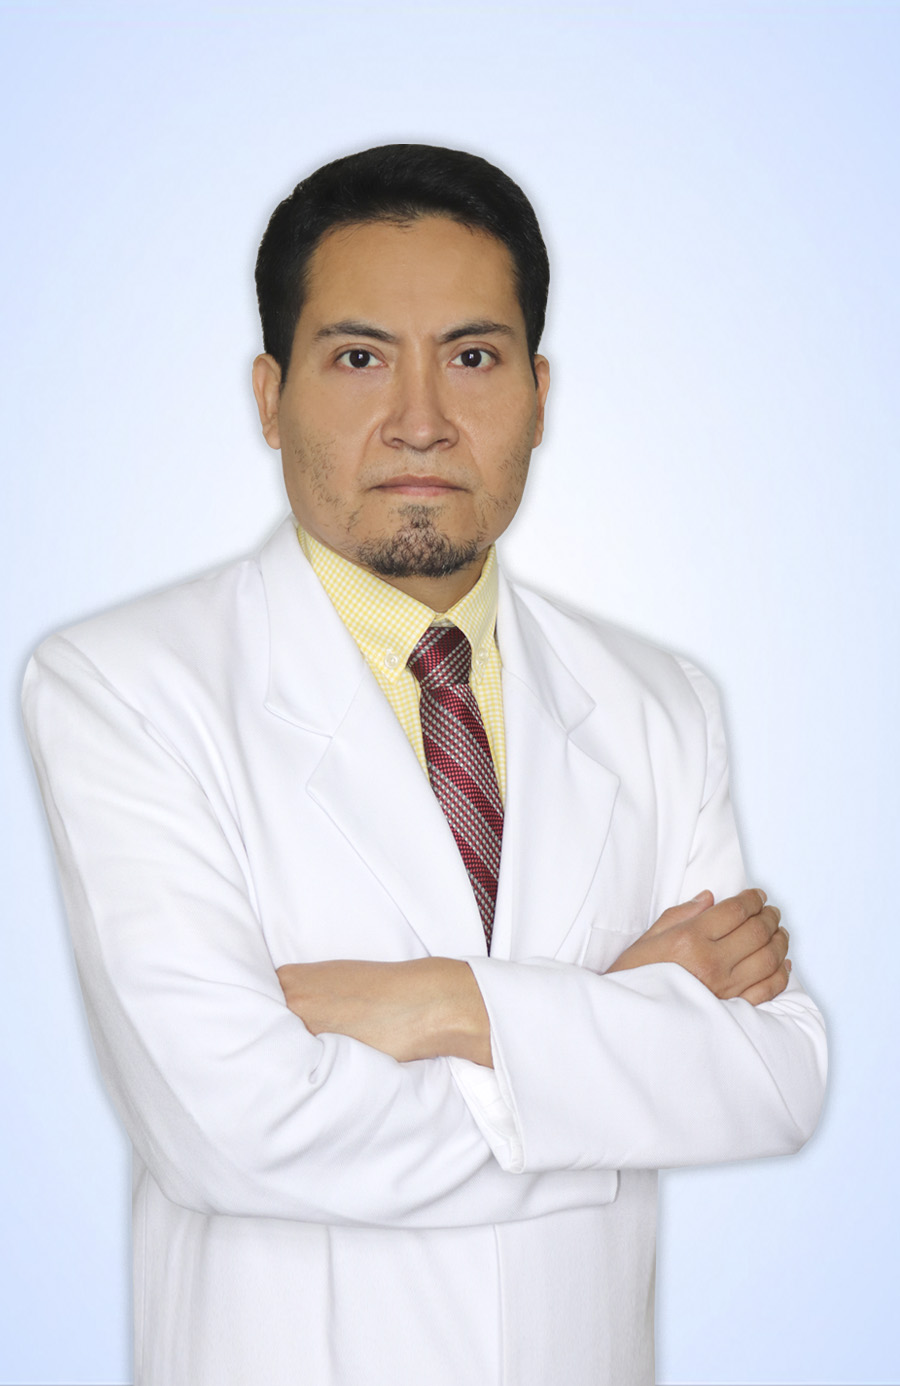 DR. EGUSQUIZA